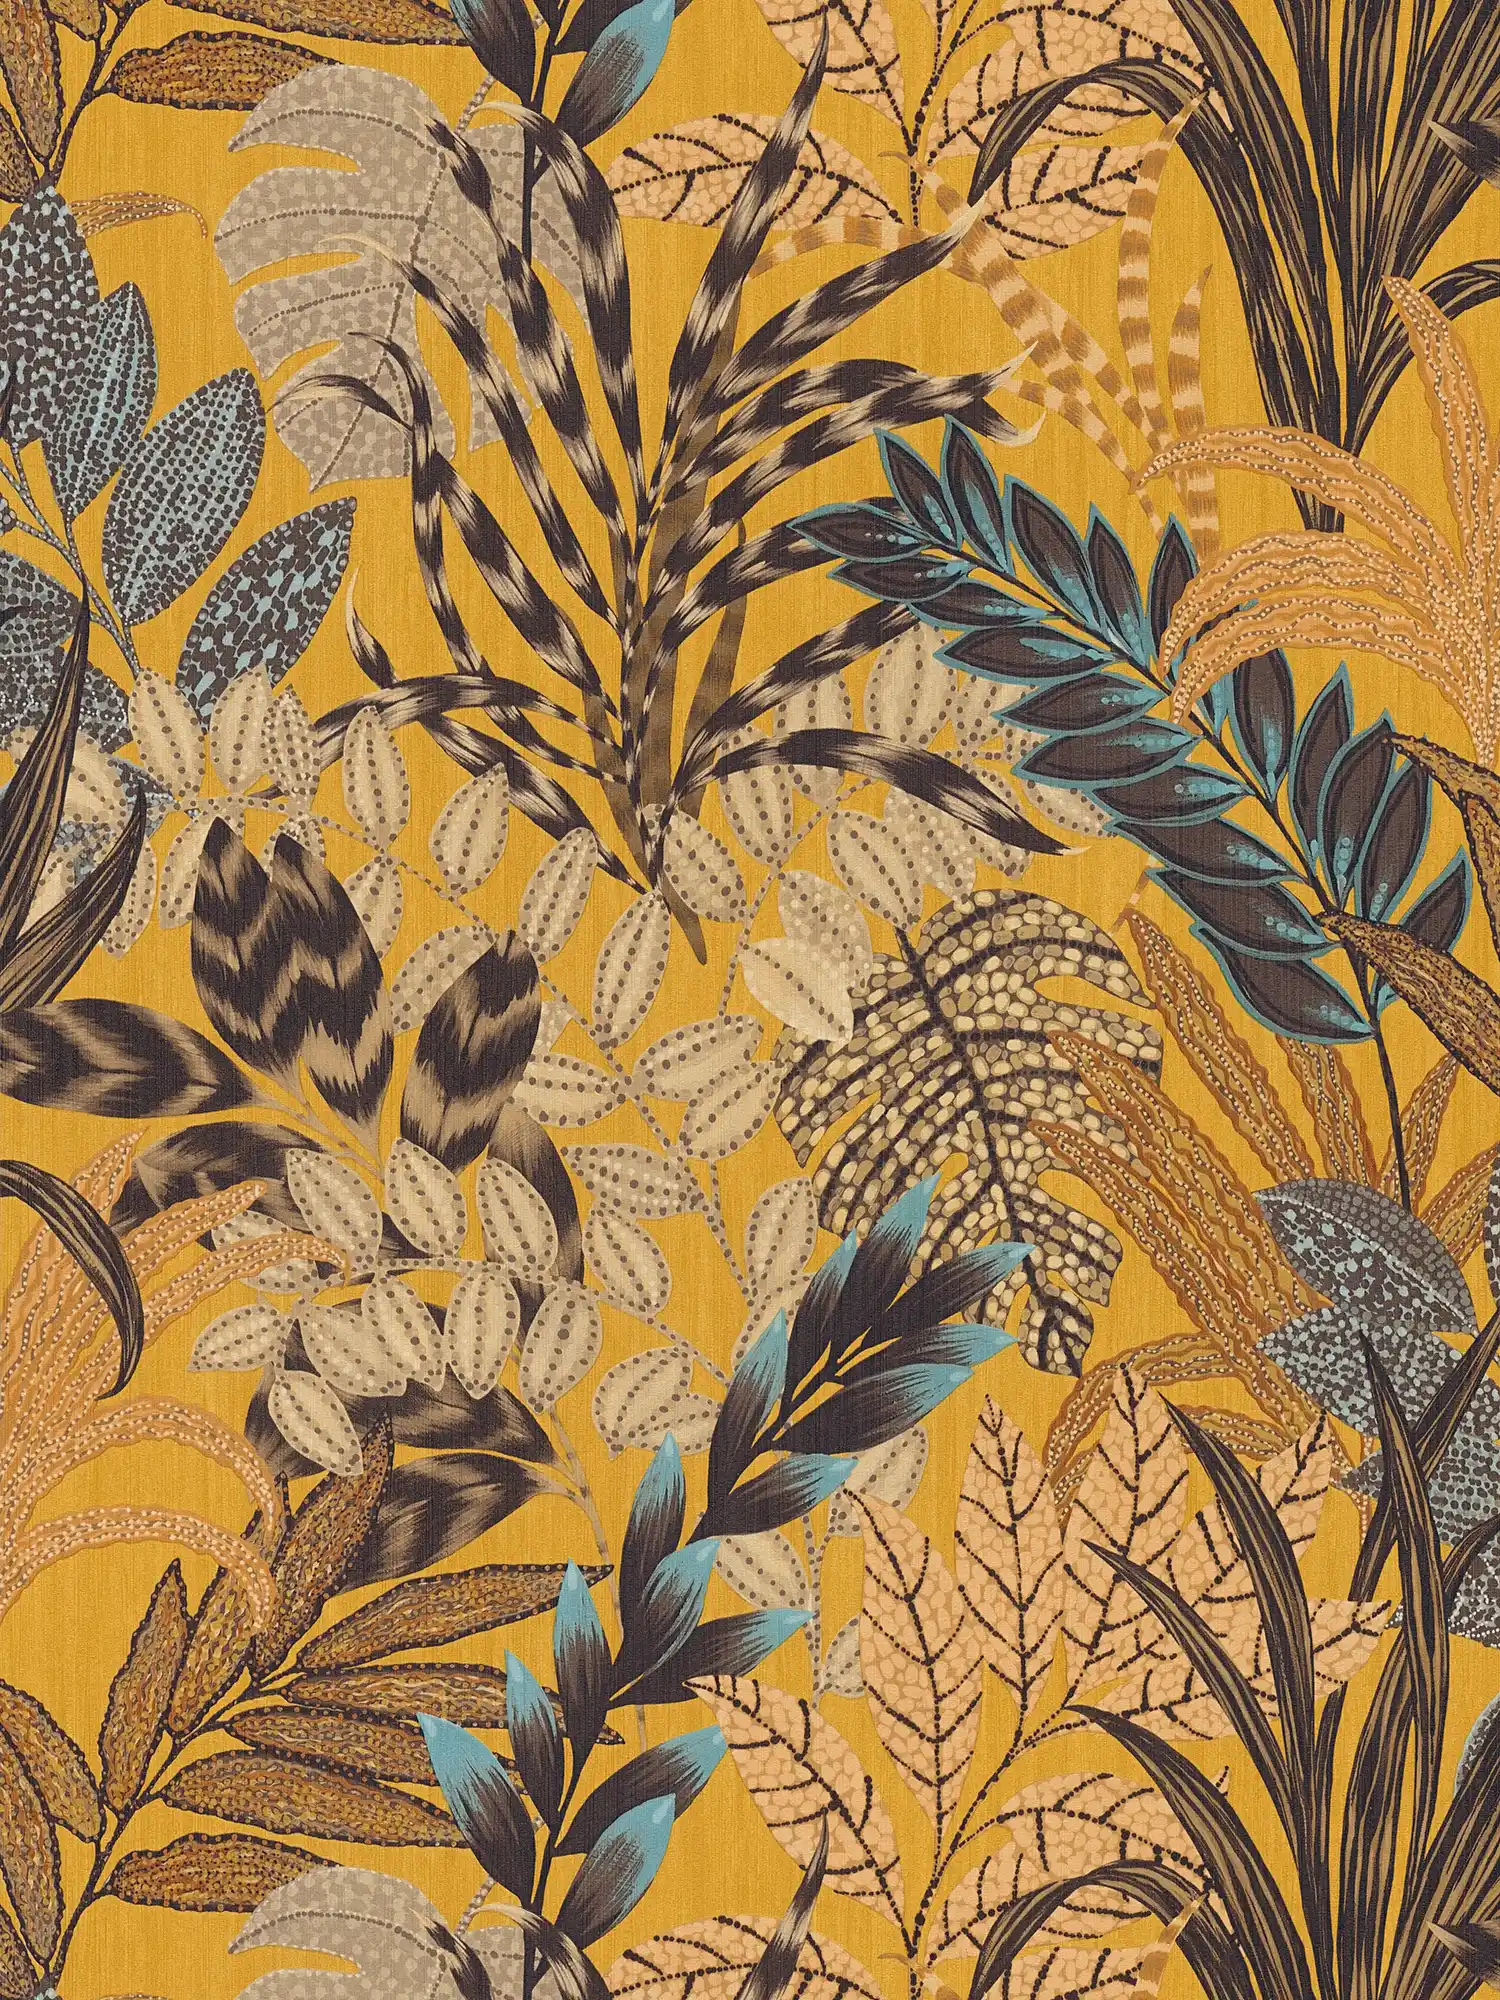         Tapete mit Blätter-Motiv in leuchtenden Farben – Braun, Bunt, Gelb
    